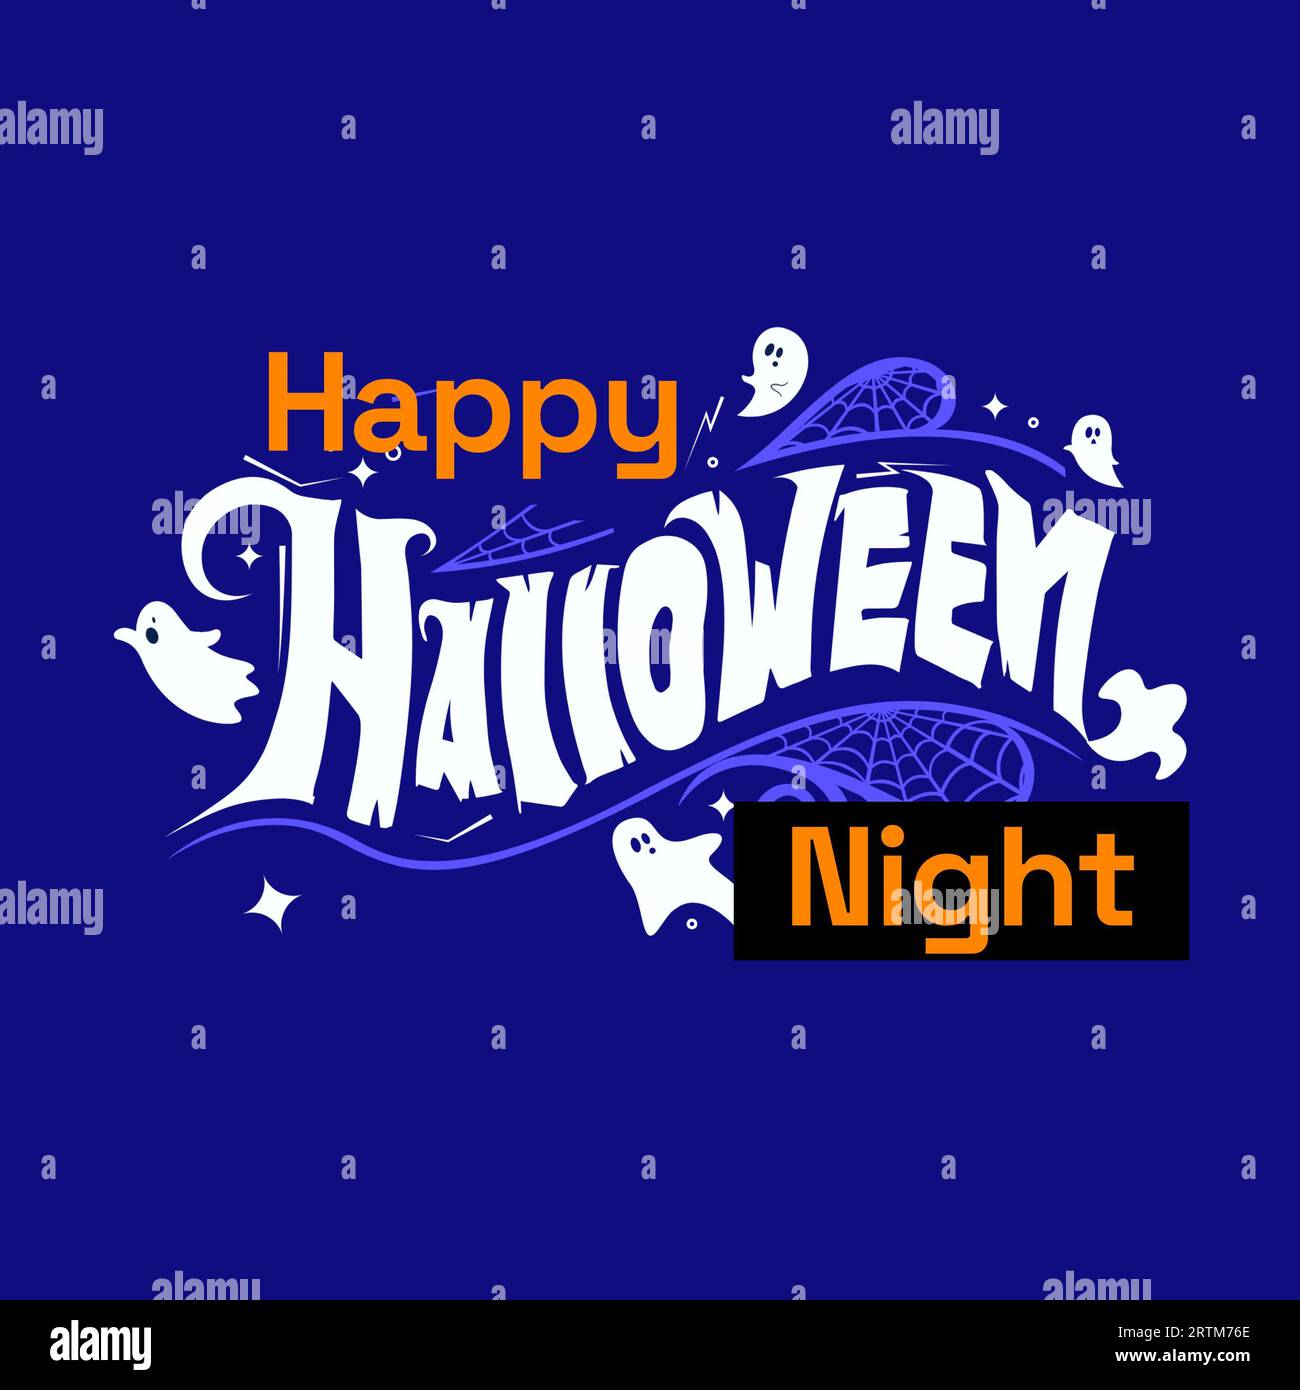 Joyeux texte de nuit d'halloween sur bleu avec des fantômes et des toiles d'araignée Banque D'Images